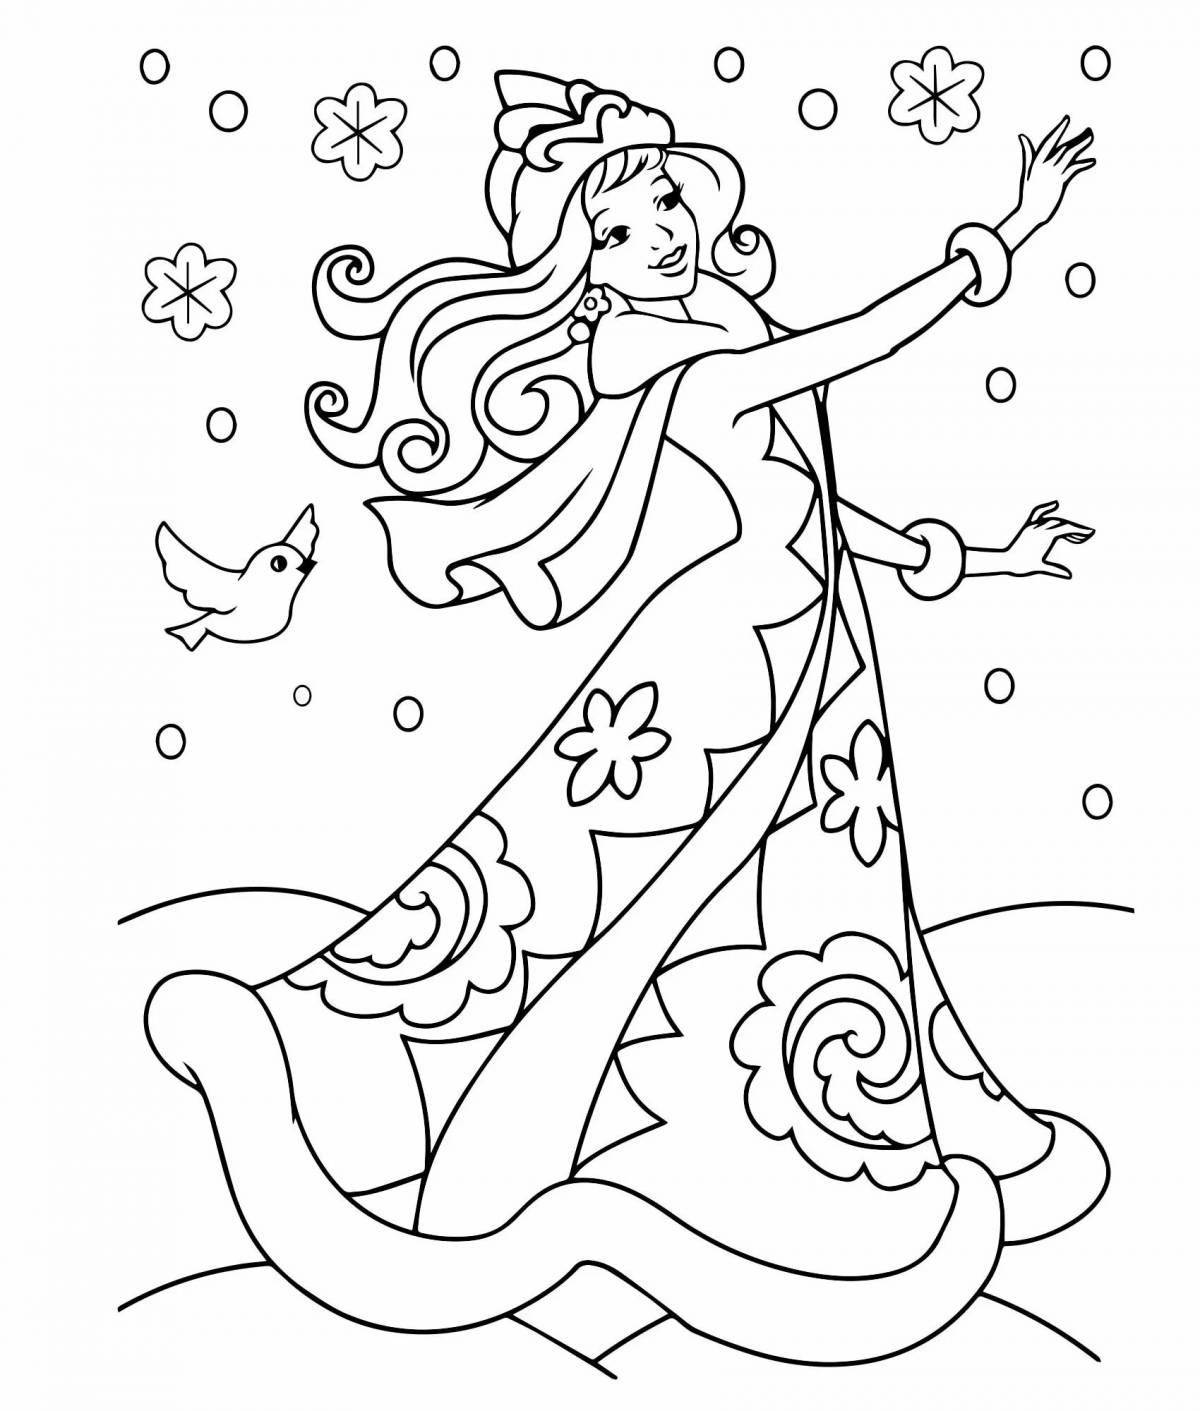 Snow Maiden hypnotic coloring book